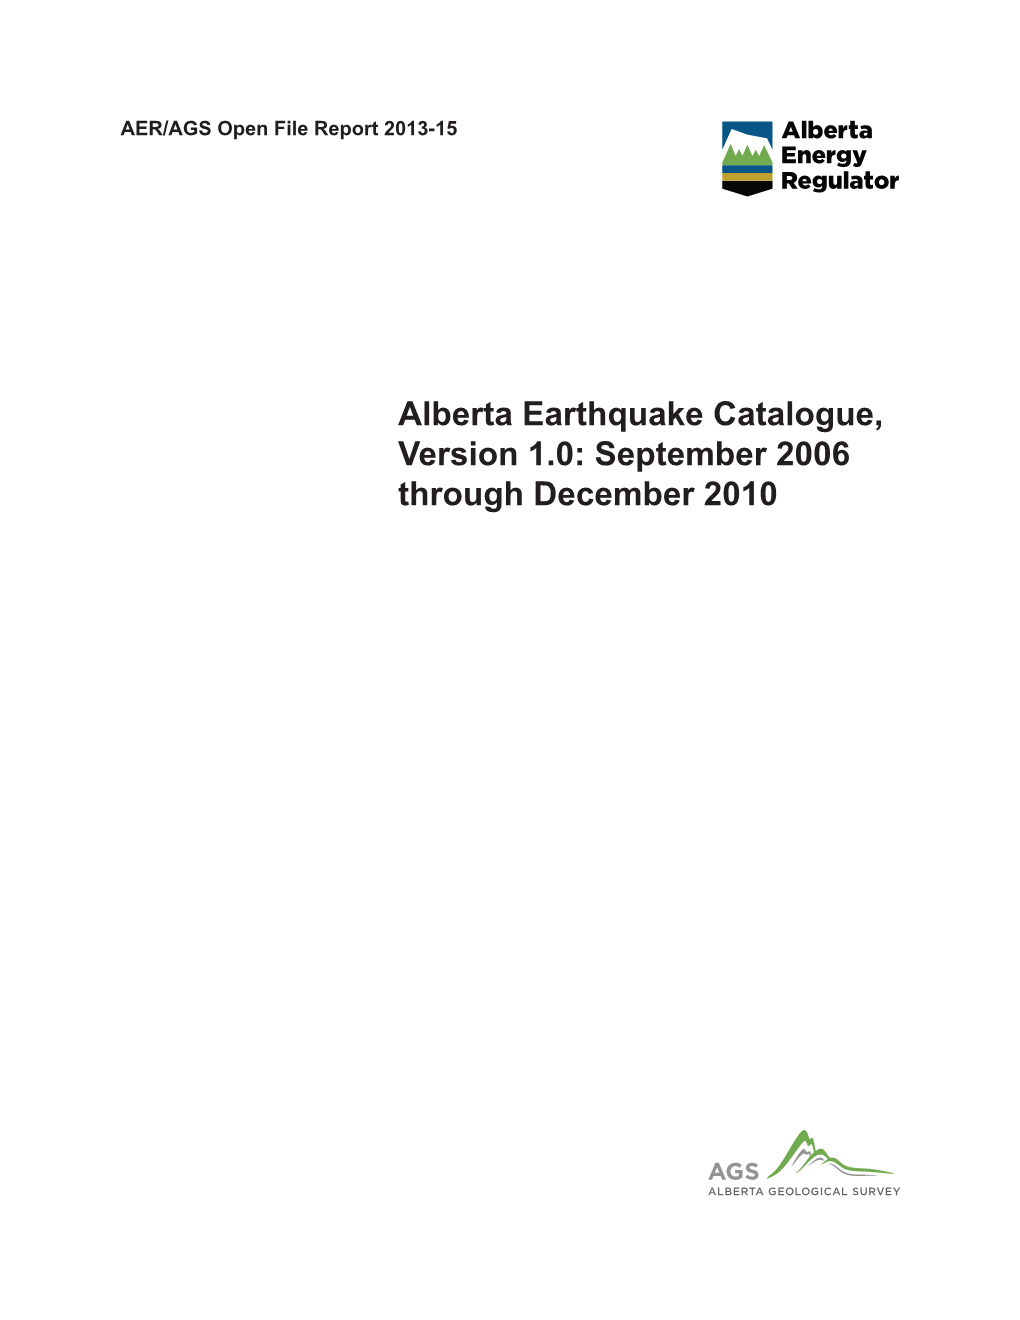 Alberta Earthquake Catalogue, Version 1.0: September 2006 Through December 2010 AER/AGS Open File Report 2013-15